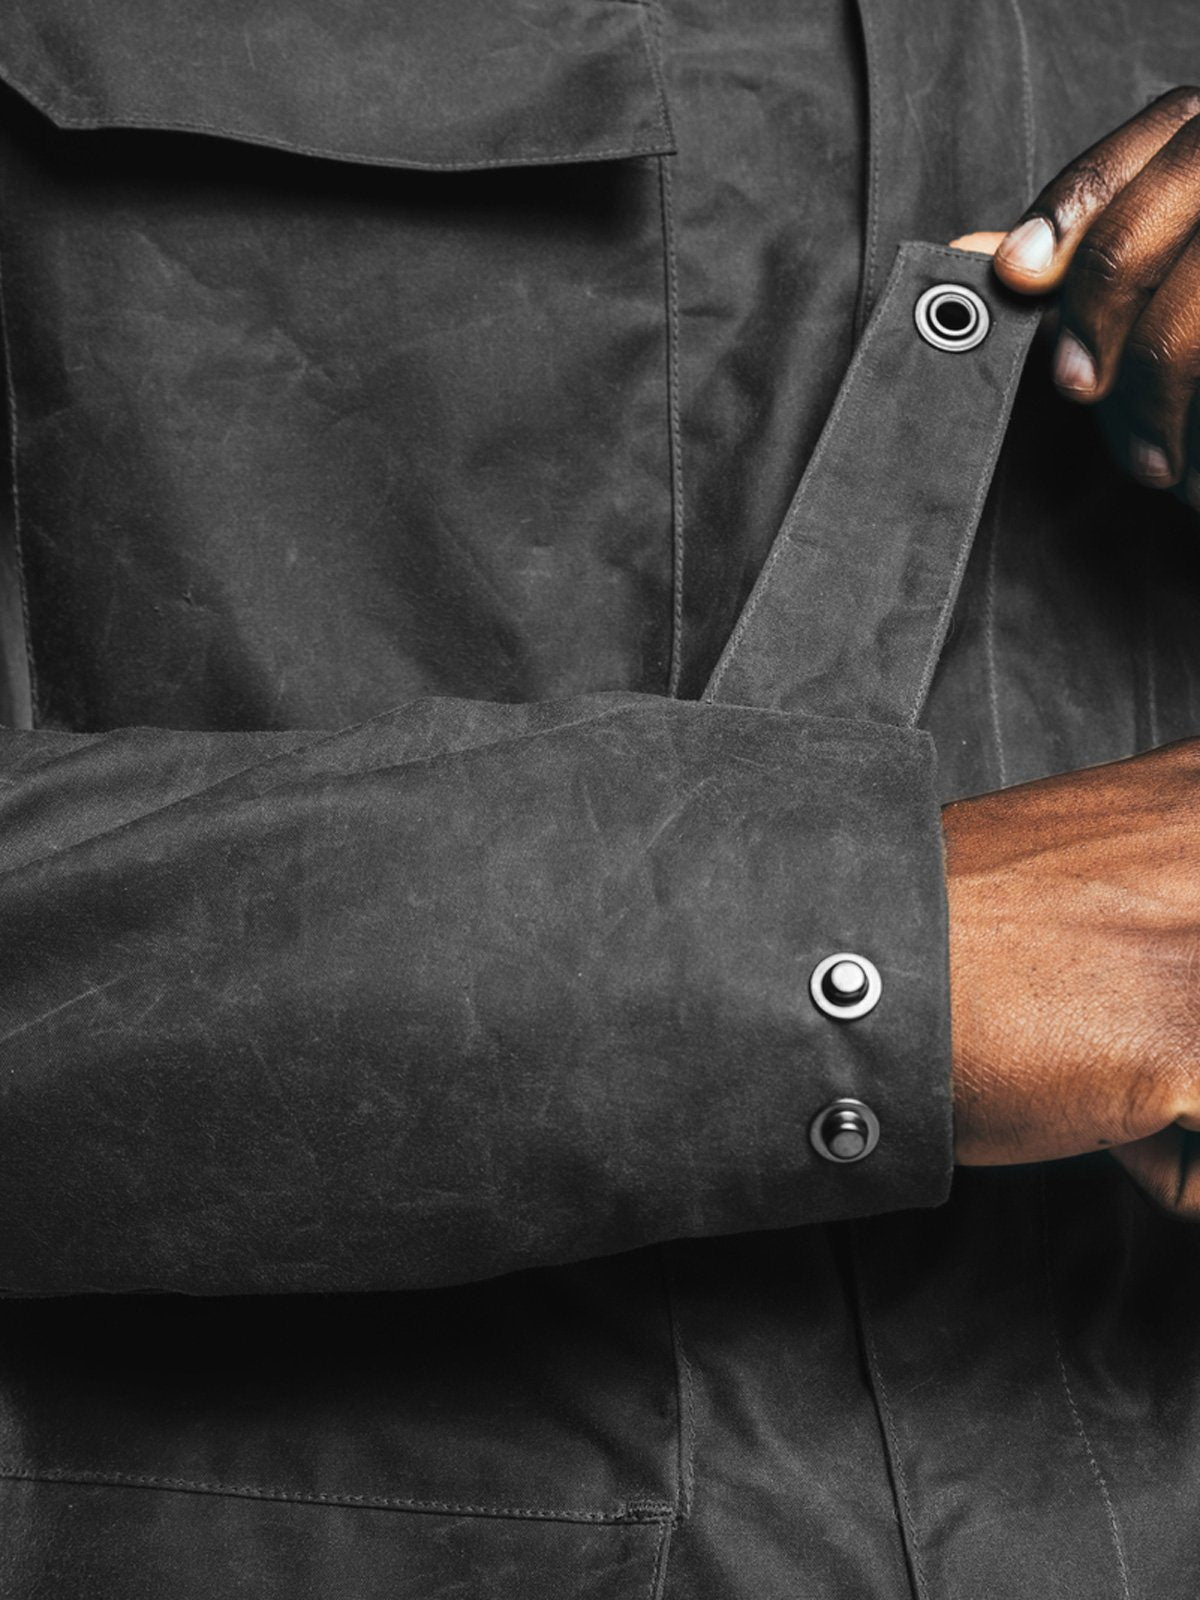 Eiger Waxed Canvas Jacket by Mission Workshop - Säänkestävät laukut ja tekniset vaatteet - San Francisco & Los Angeles - Rakennettu kestämään - ikuinen takuu